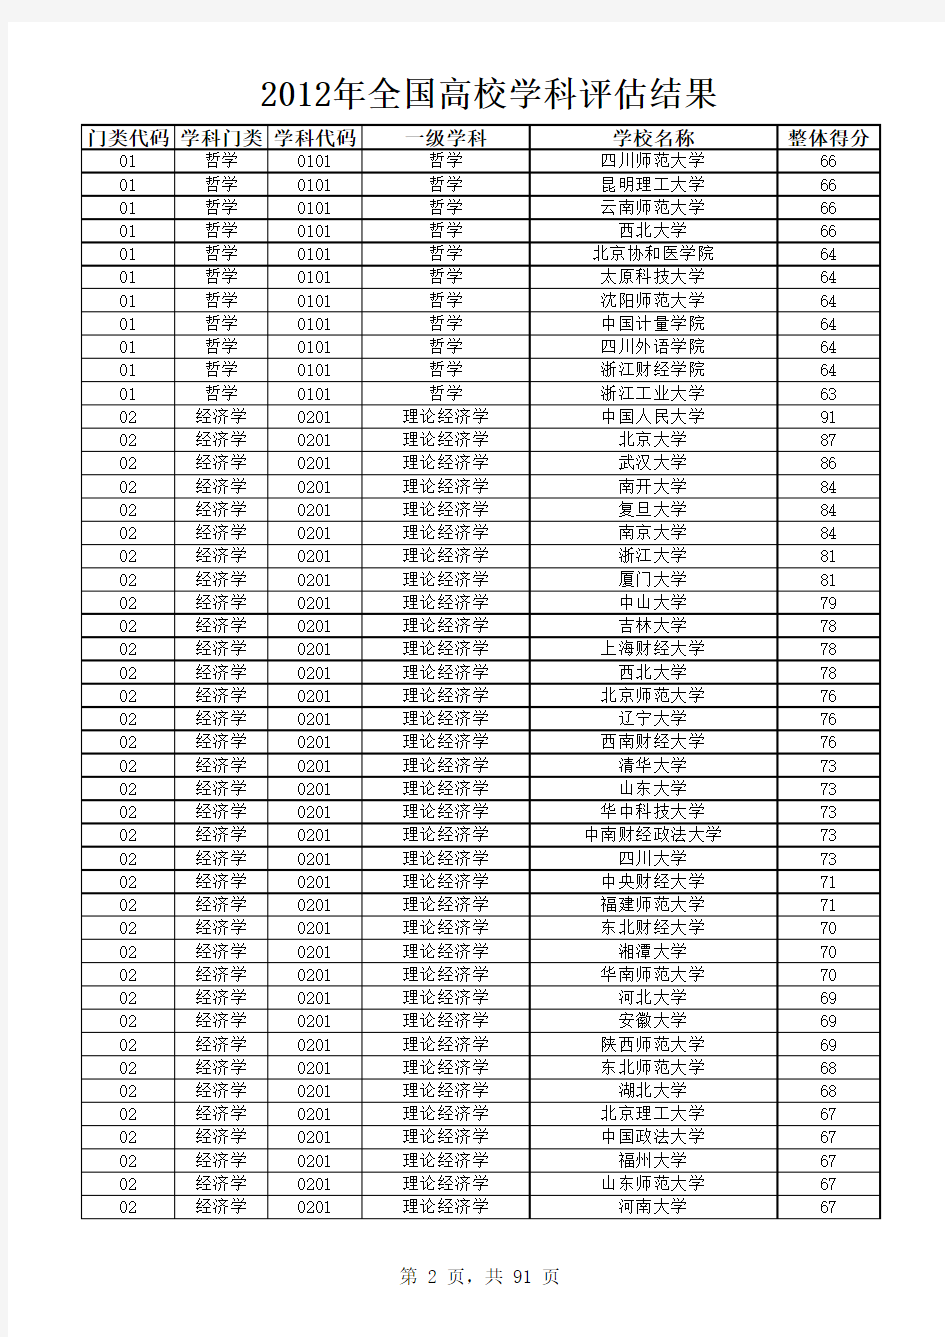 2012年中国高校学科评估结果(教育部官方网站资料整理)